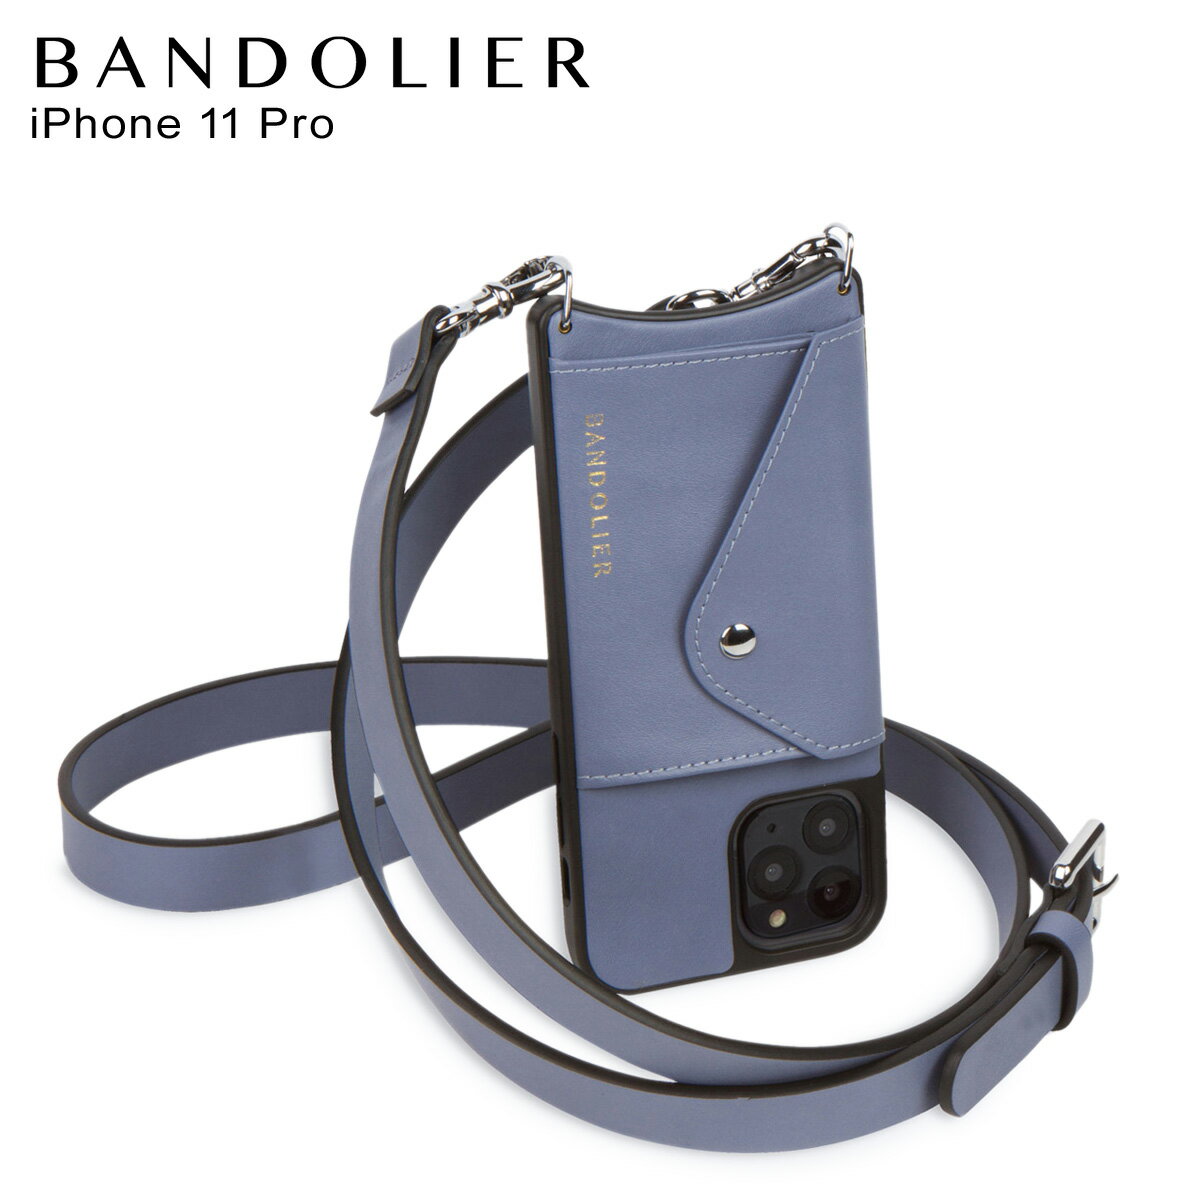 バンドリヤー BANDOLIER iPhone11 Pro ケース スマホケース 携帯 ショルダー アイフォン ヘイリー サイド スロット ブルー スモーク メンズ レディース HAILEY SIDE SLOT BLUE SMOKE ブルー 14HADPLS